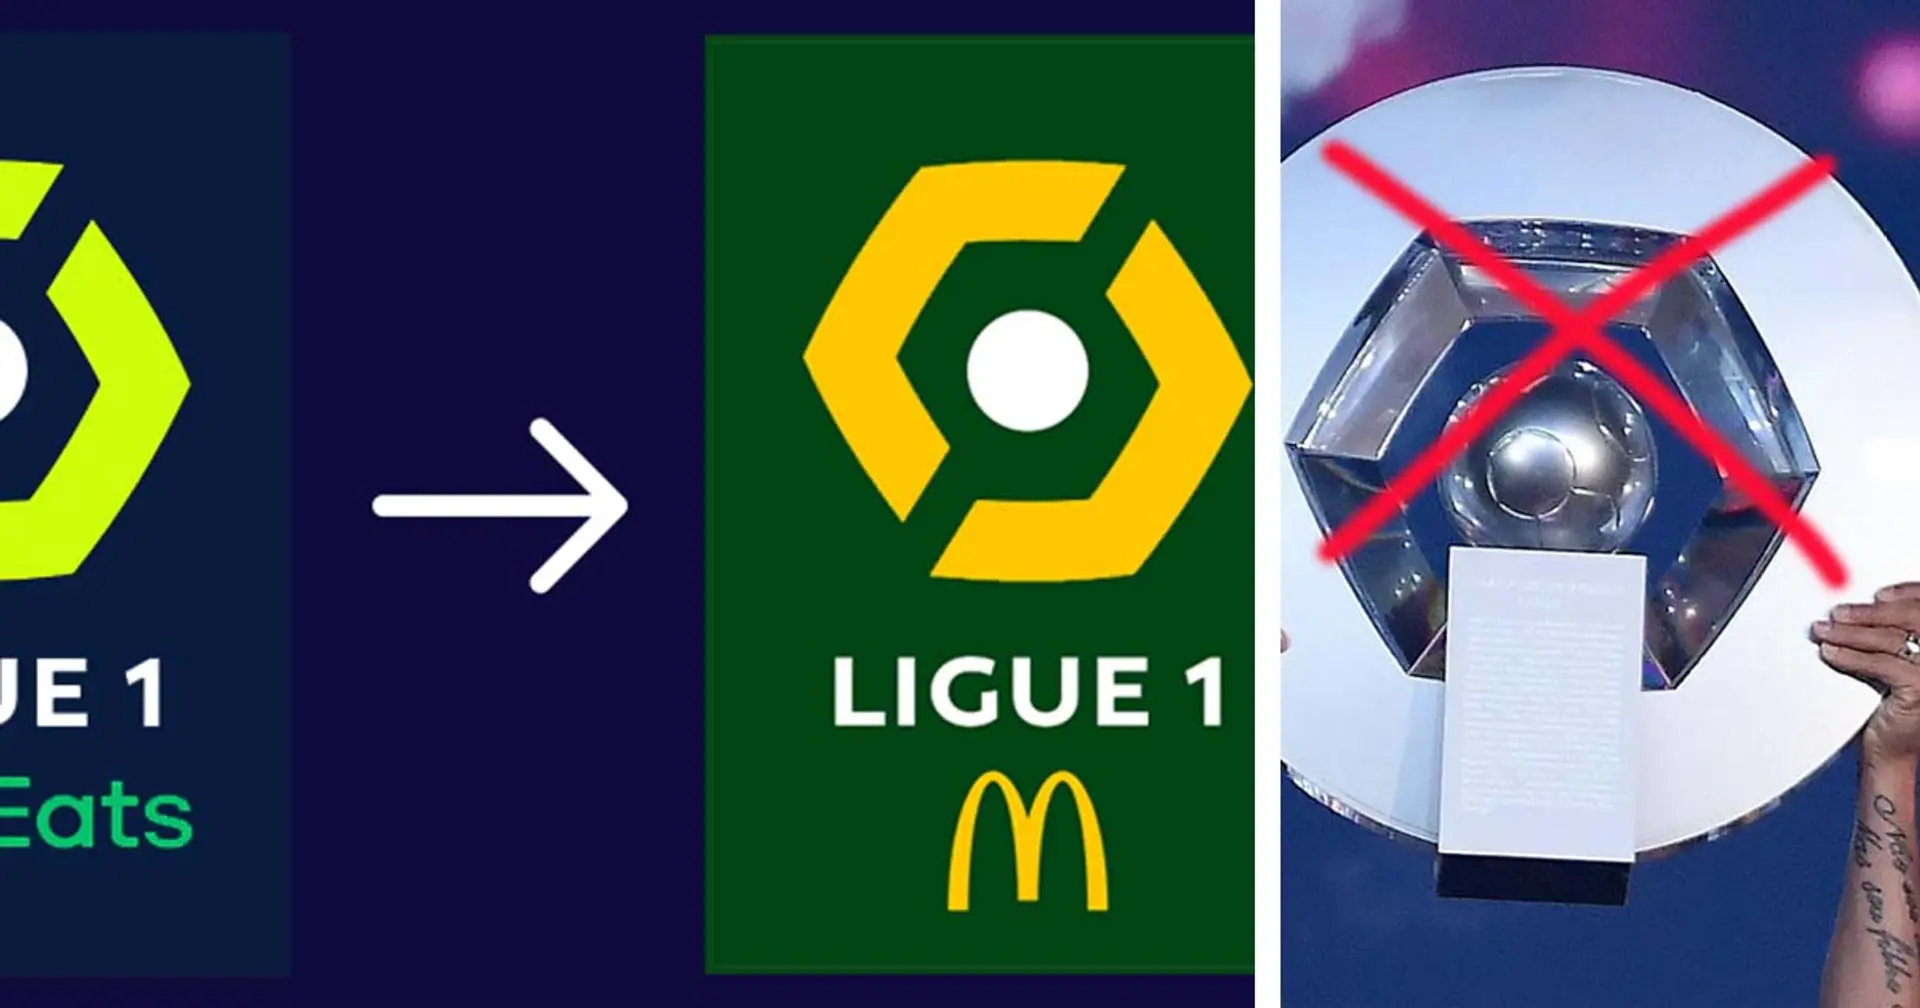 Après un nouveau nom, place à un nouveau logo et un nouveau trophée pour la Ligue 1